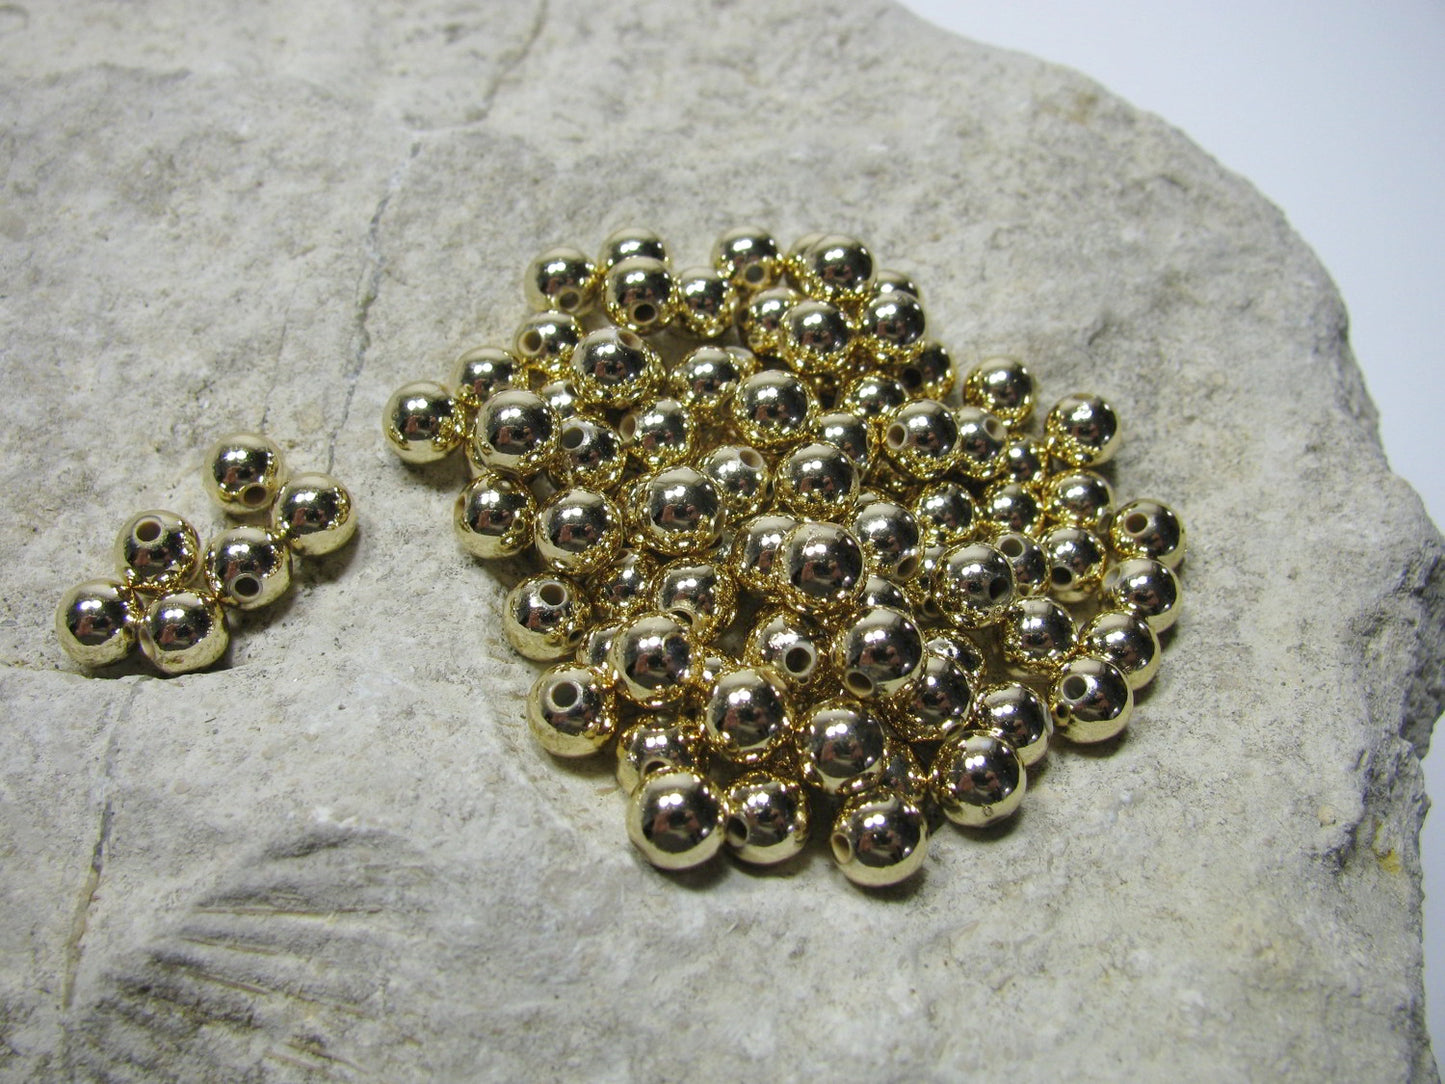 100 Wachsperlen, 6 mm in gold, zur Hochzeit, Deko, Schmuck basteln, Perlensterne